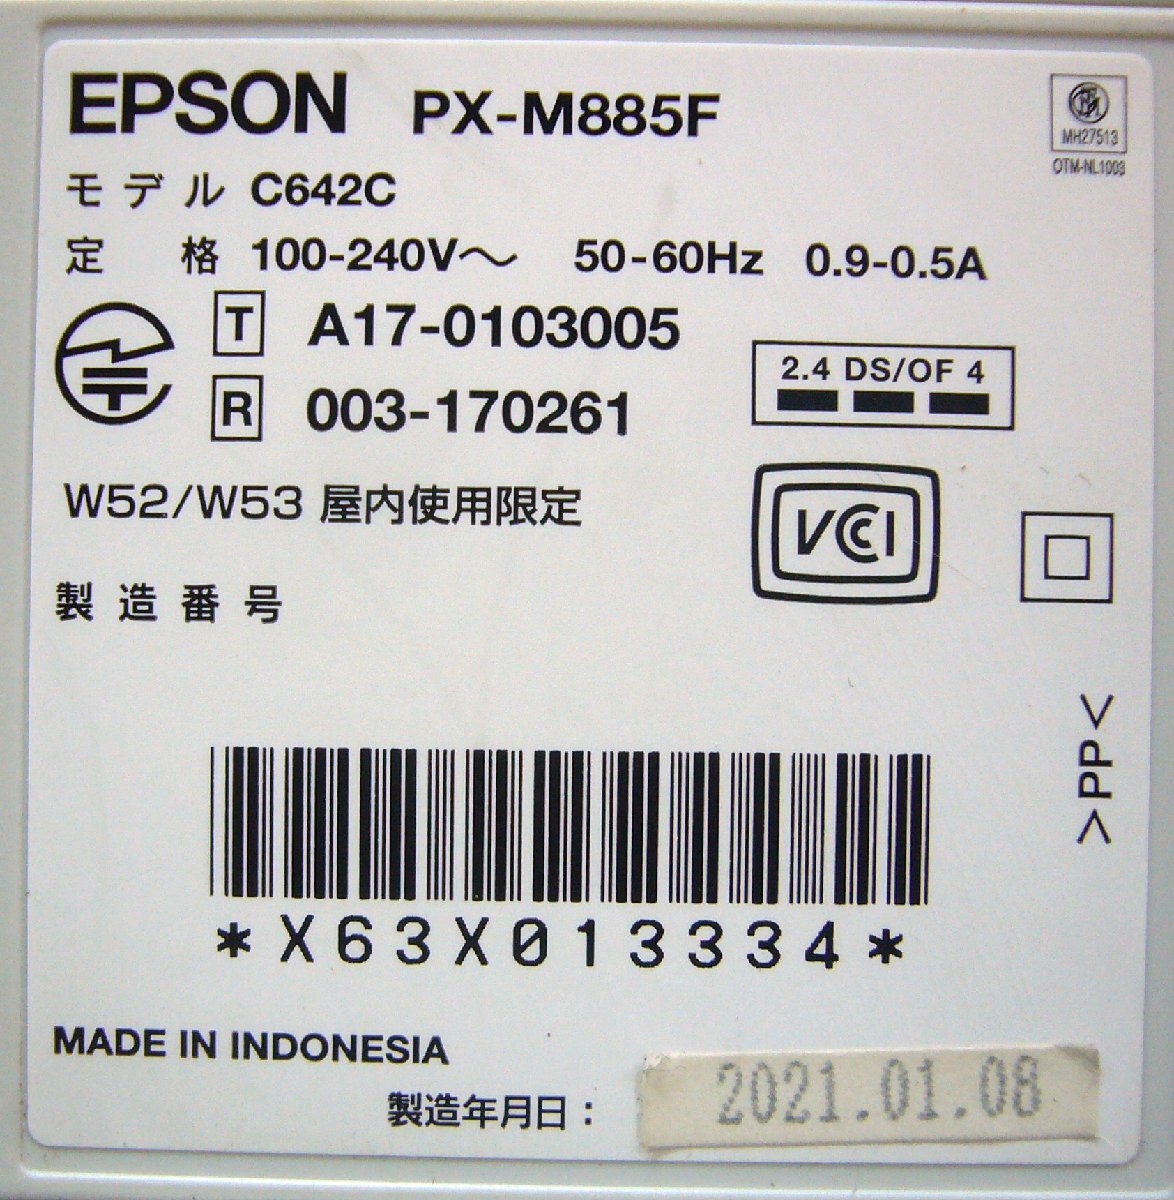 ☆訳あり品!EPSON エプソン A4 ビジネスプリンター インクジェット複合機【PX-M885F】☆_画像9